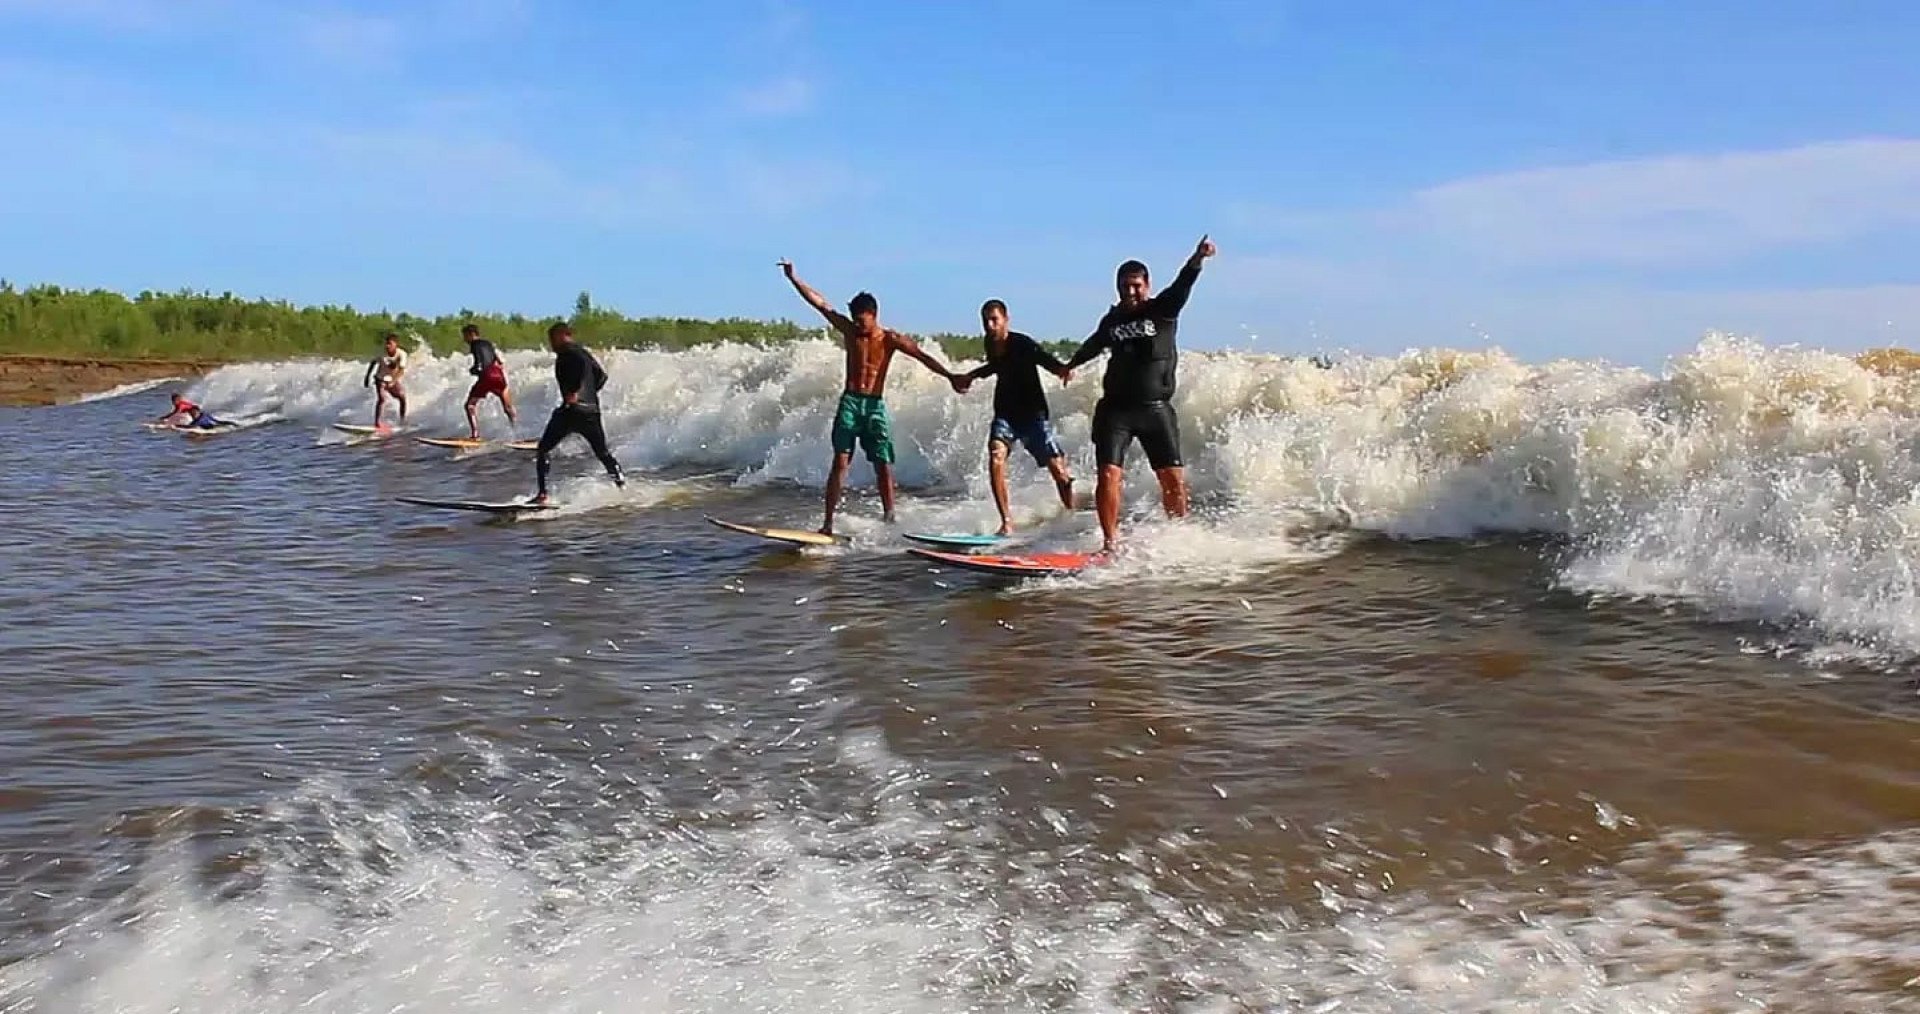 Documentário com André Pássaro irá mostrar o dia a dia, onde moram, equipamentos que usam, dificuldades, inspirações e sonhos da nova geração do surf, da comunidade ribeirinha, no Maranhão - Divulgação/Douglas Gomes